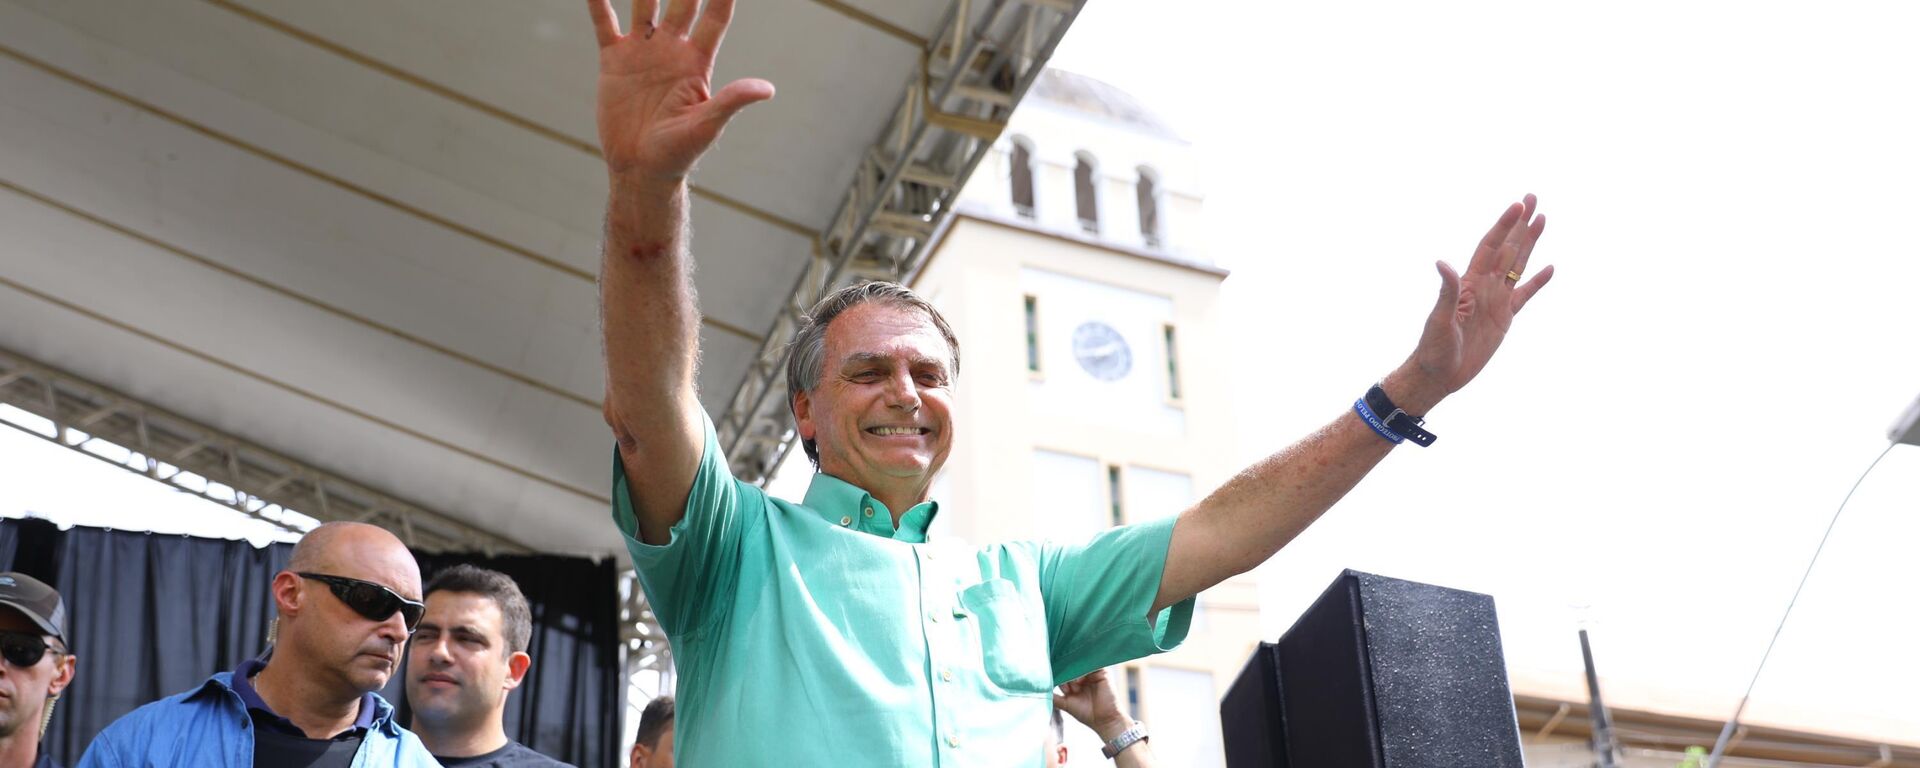 O candidato a presidente Jair Bolsonaro (PL) realiza campanha política na cidade de Divinópolis, em Minas Gerais, em 23 de setembro de 2022 - Sputnik Brasil, 1920, 23.09.2022